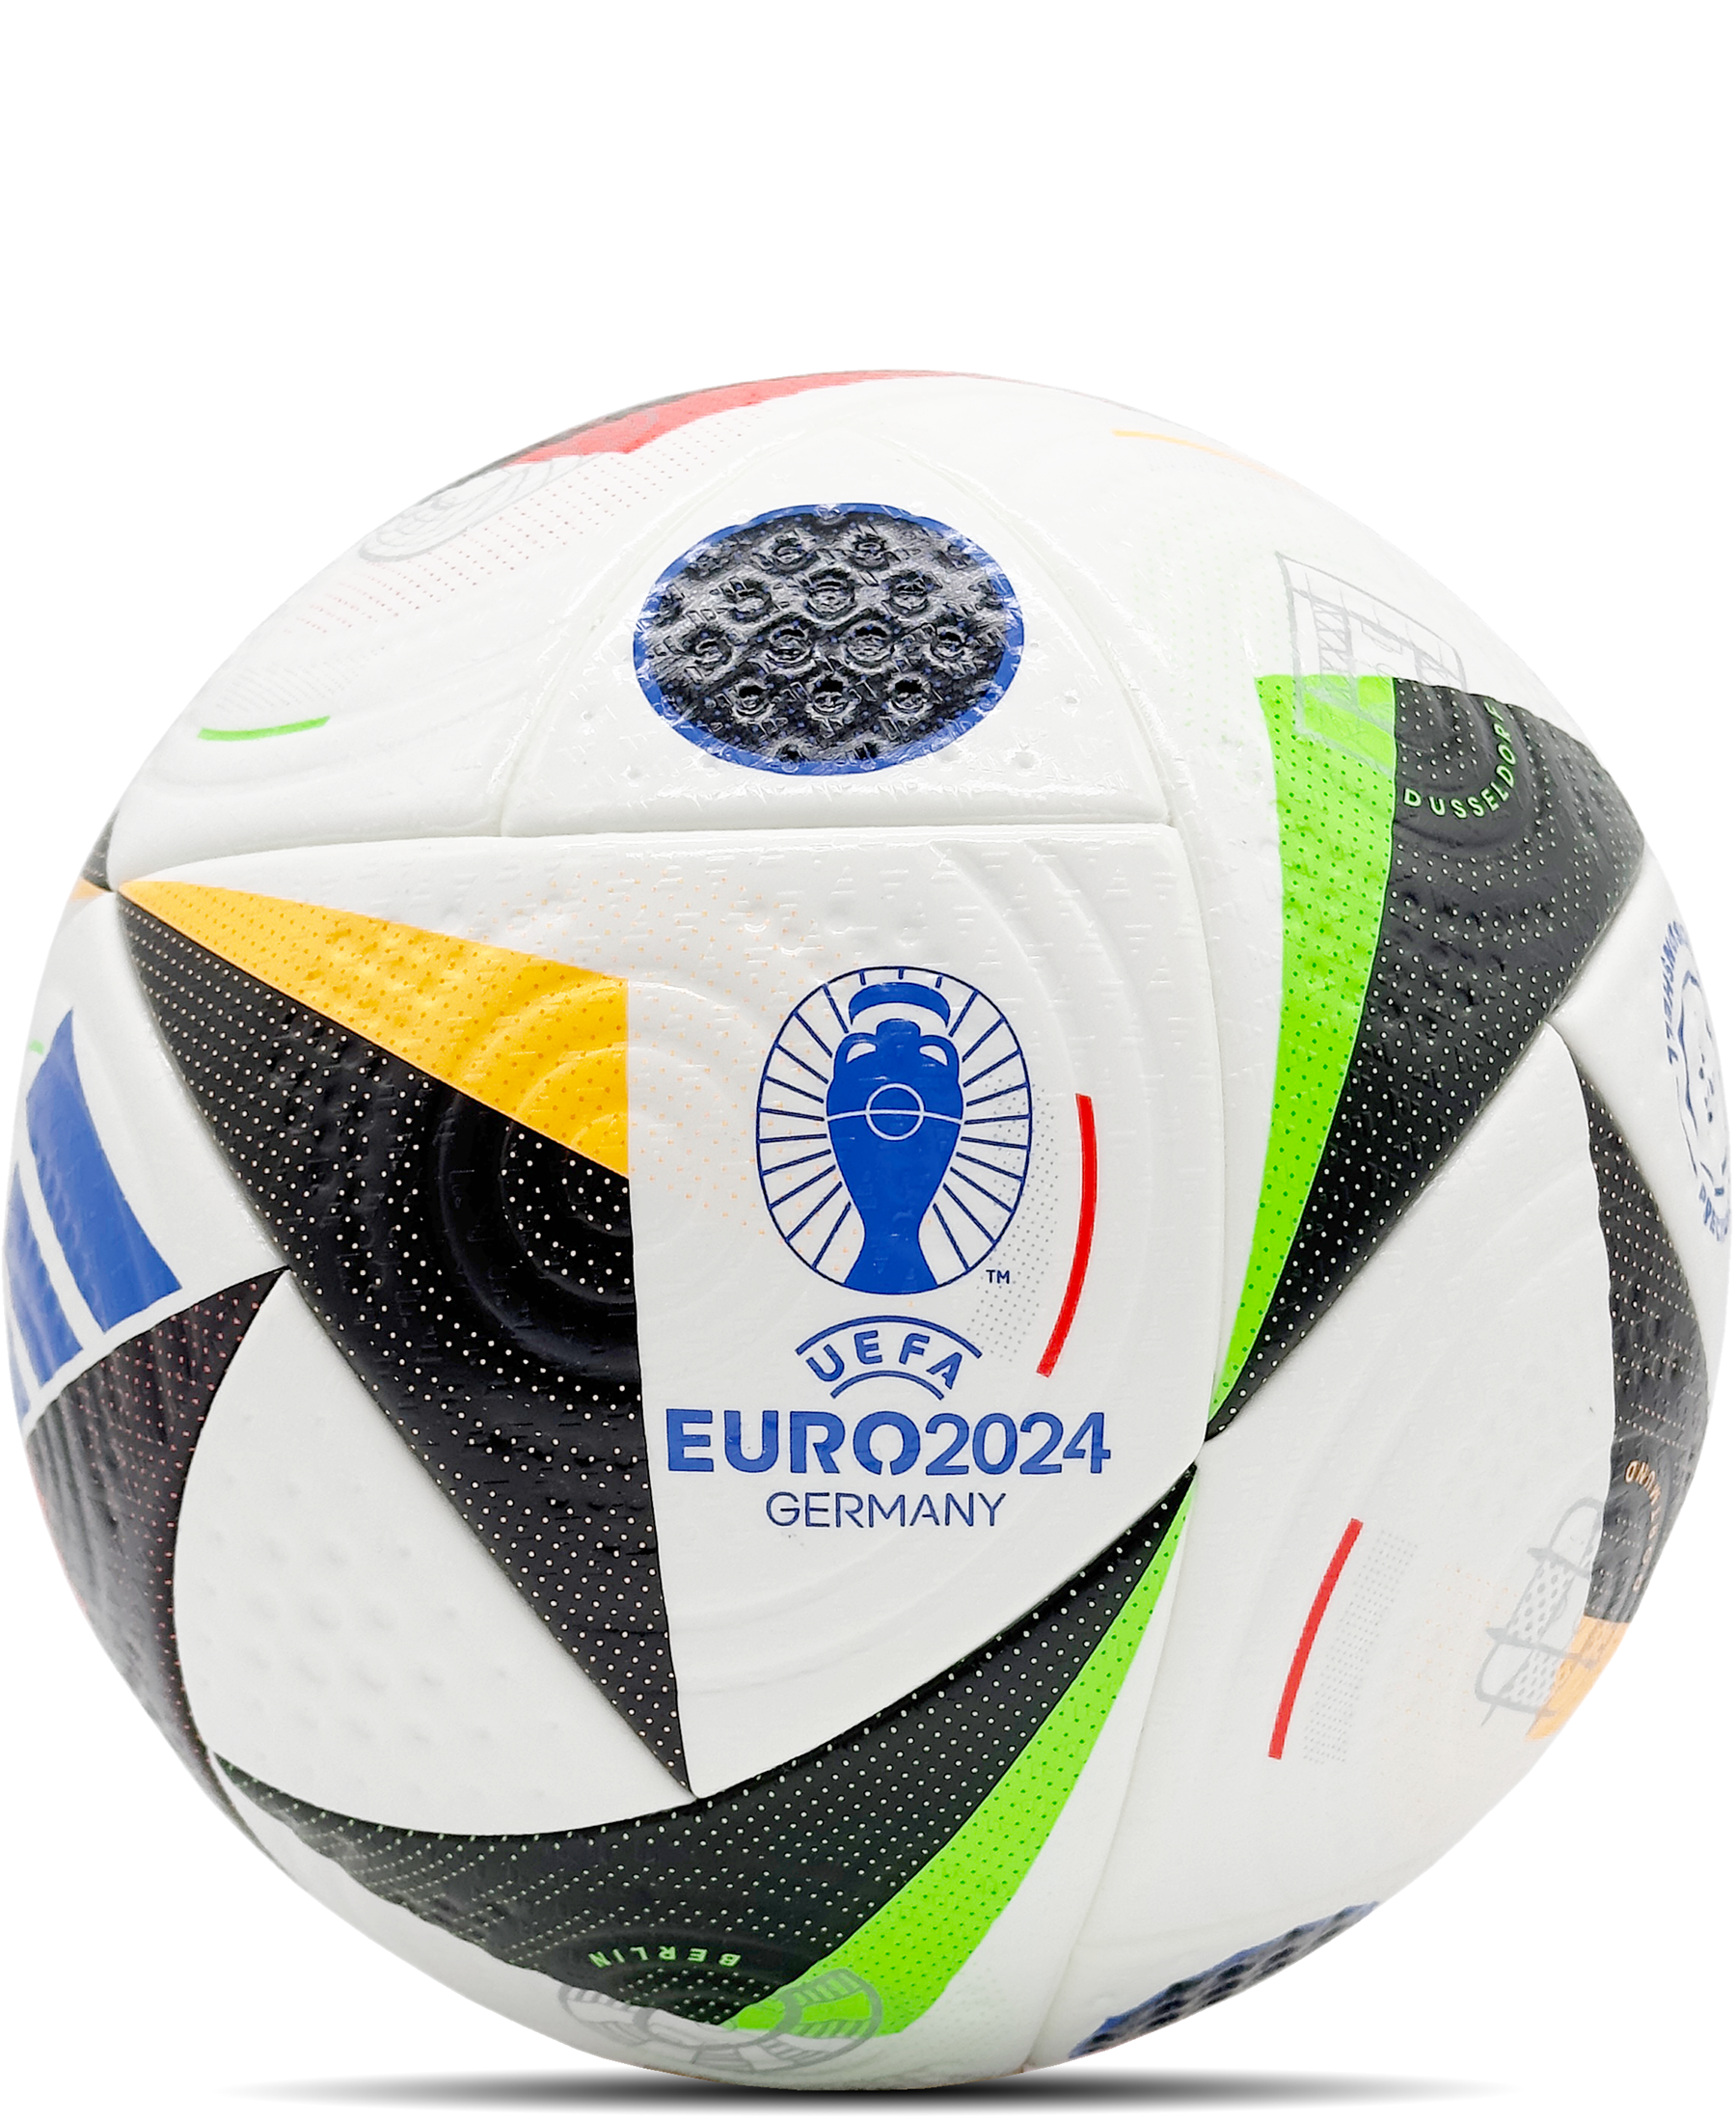 Begeistern Sie sich für das Adidas Official Match Ball "Fussballliebe" UEFA EM Germany 2024 (IQ3682). Dieser offizielle Spielball verbindet höchste Qualität mit einem einzigartigen Design, das die Liebe zum Fußball feiert. Bestellen Sie jetzt exklusiv bei SHOP4TEAMSPORT und erleben Sie die herausragende Performance dieses offiziellen UEFA EM Germany 2024 Balls. Die präzise Konstruktion und die hochwertigen Materialien garantieren optimale Spielqualität.